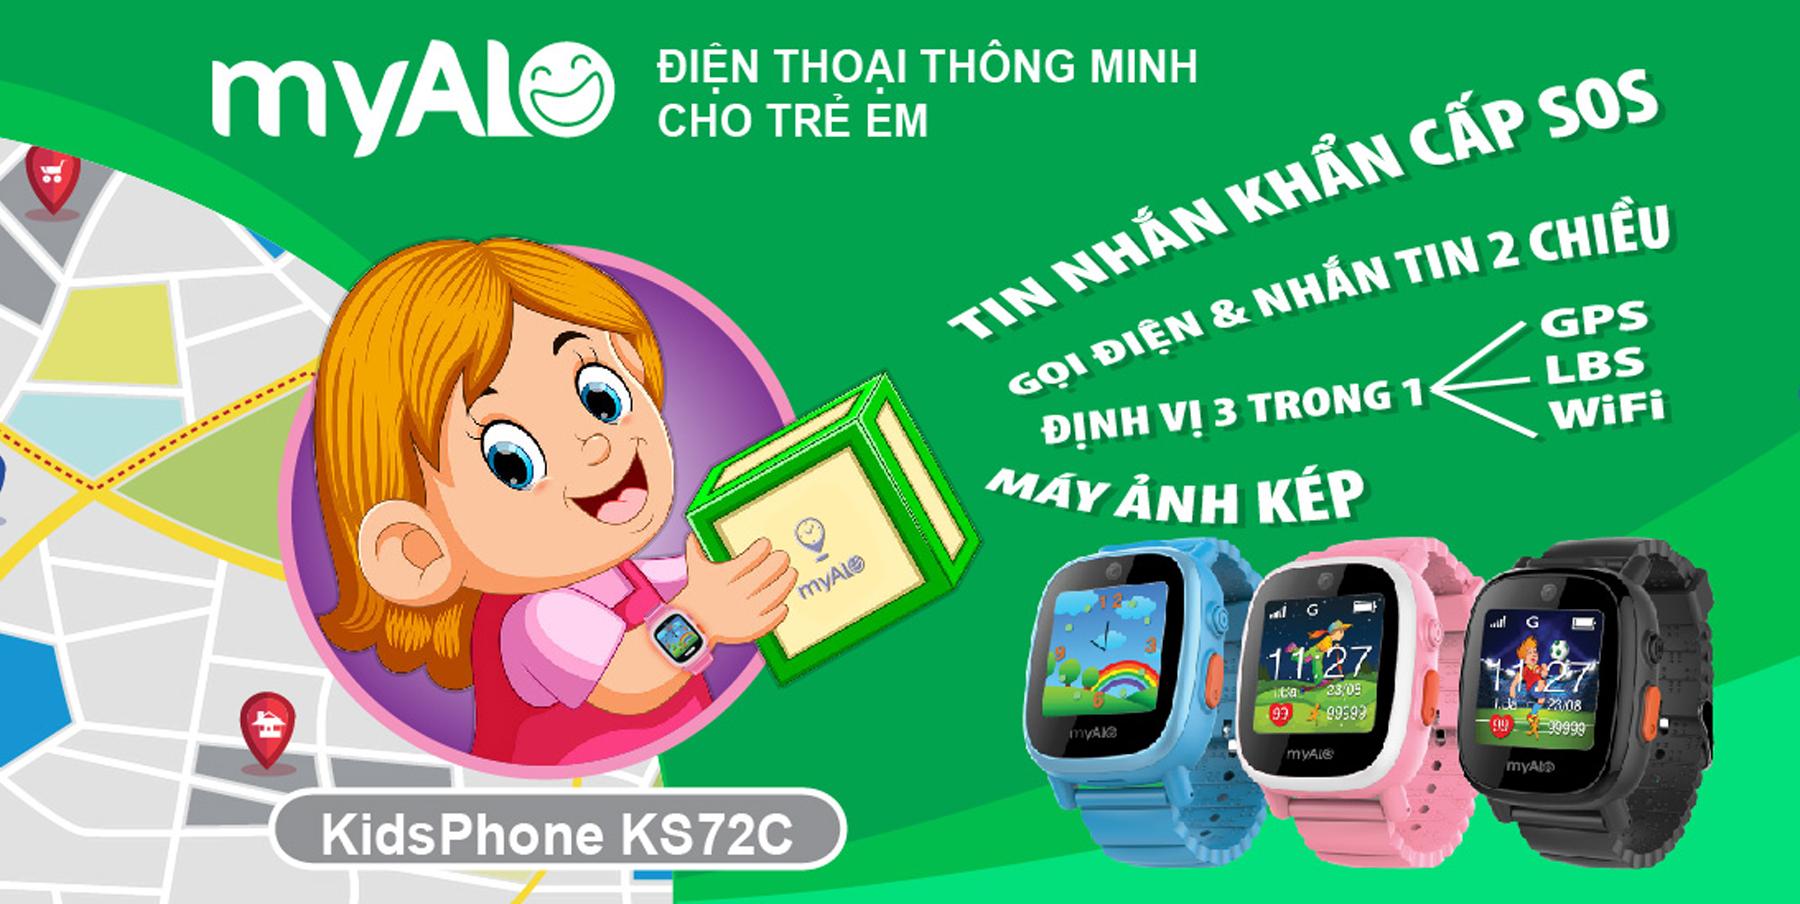 VnExpress.net - Đồng hồ thông minh myAlo dành cho trẻ em